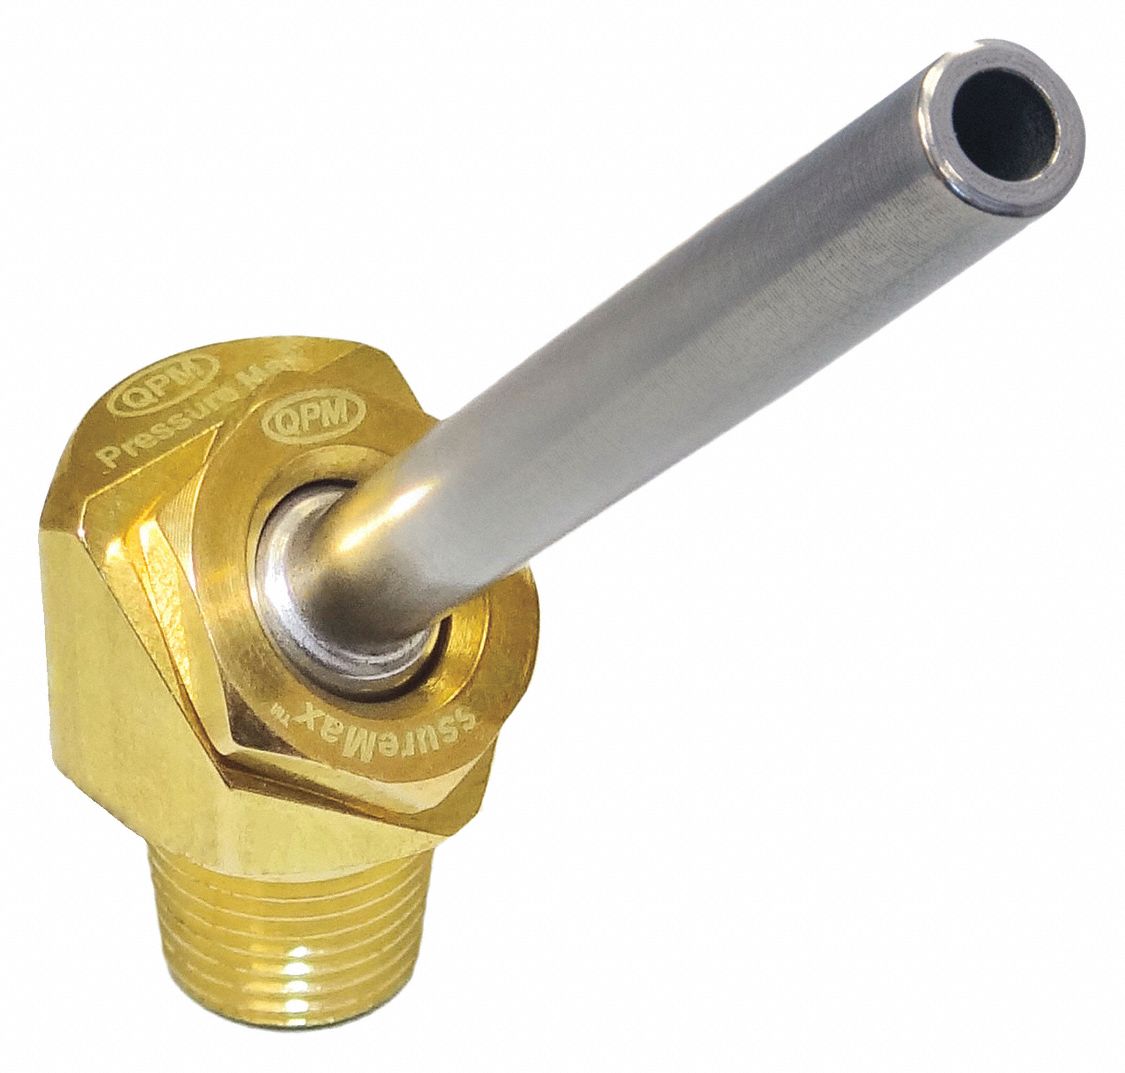 Coolant Nozzle: PressureMax, Brass, 0.12 in Orifice Dia., 1,000 Max. PSI, 63/64 in Lg, 5 PK